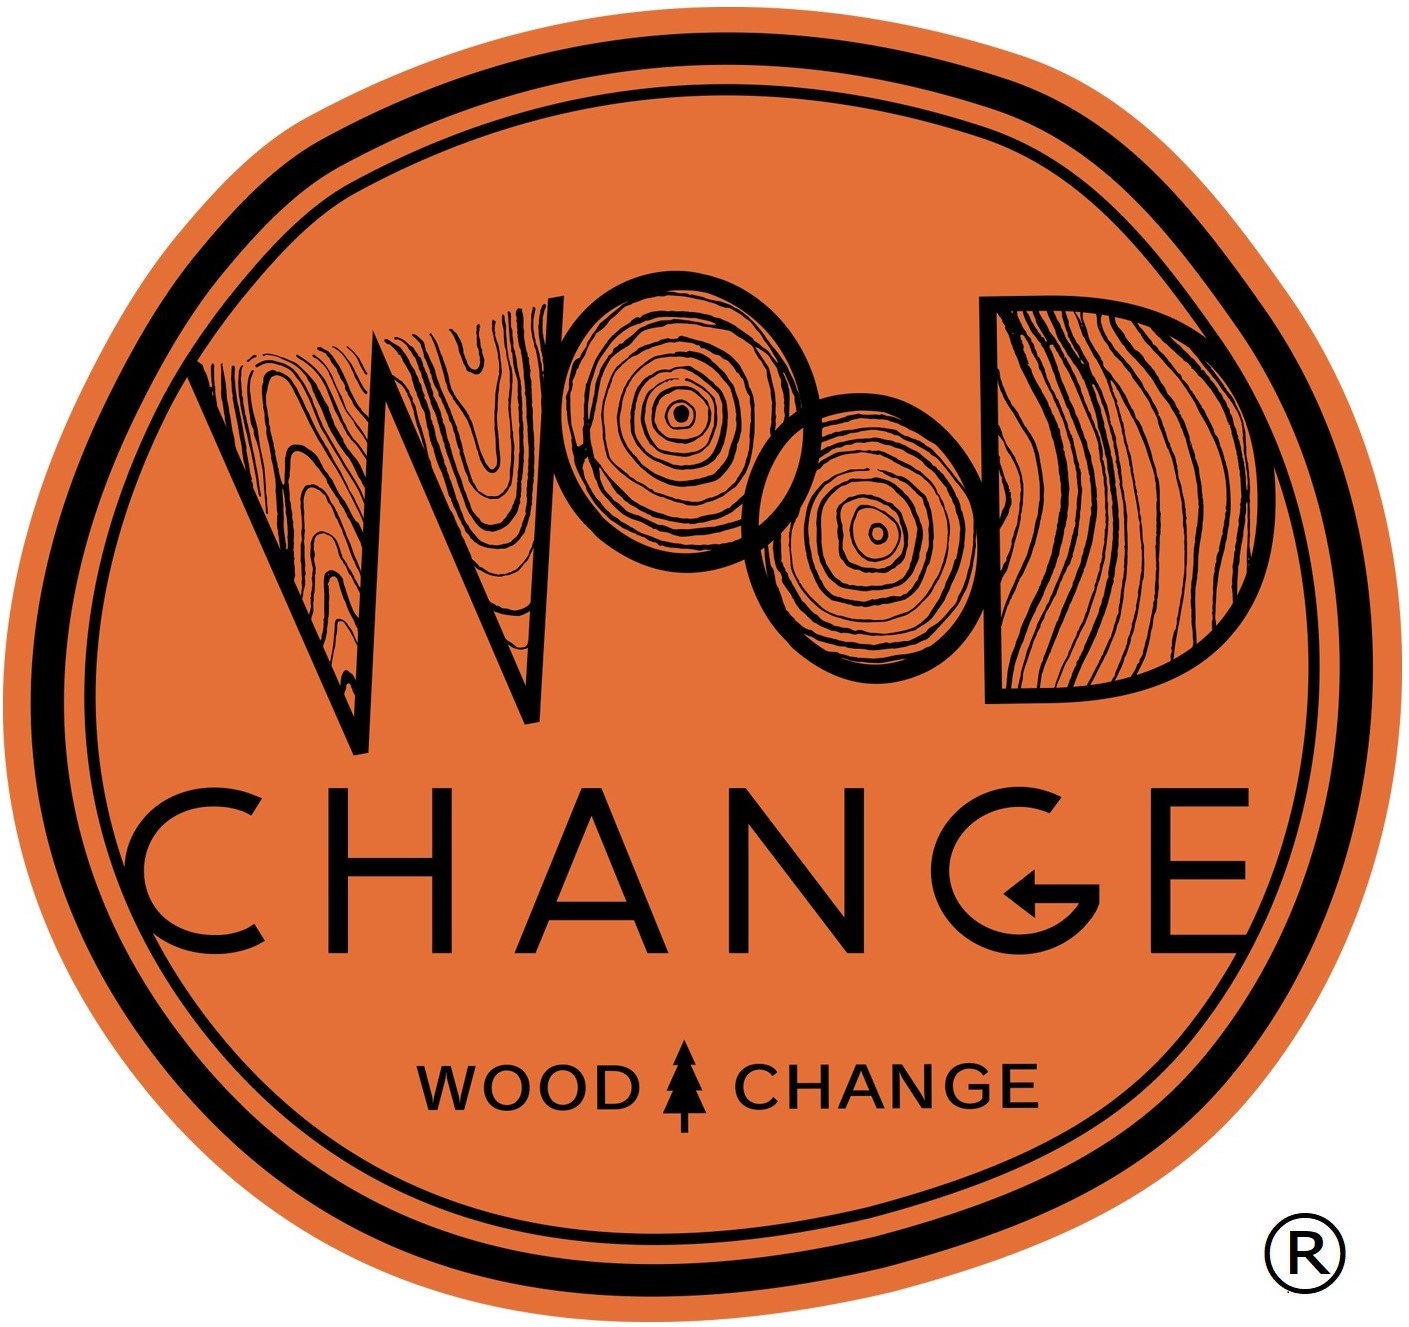 10月は「木材利用促進月間」です～ウッド・チェンジ 木づかいが 森をよくする 暮らしを変える～